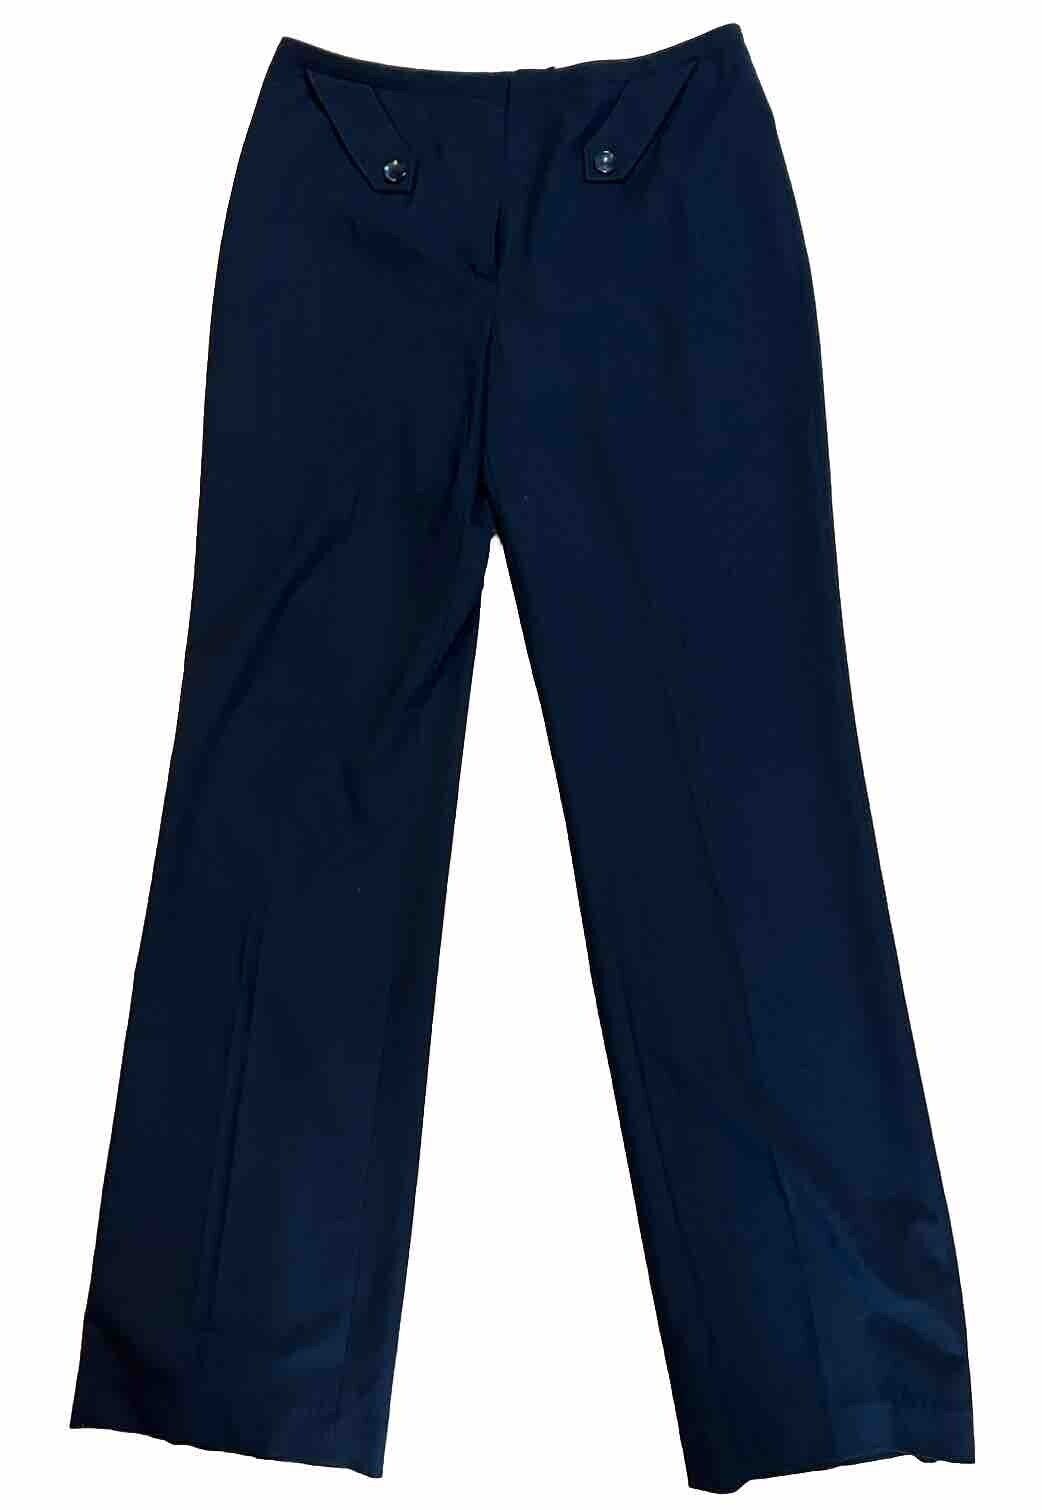 Escada Lightweight Navy Blue Virgin Wool Blnd Stretch Dress Straight Leg Pants 6